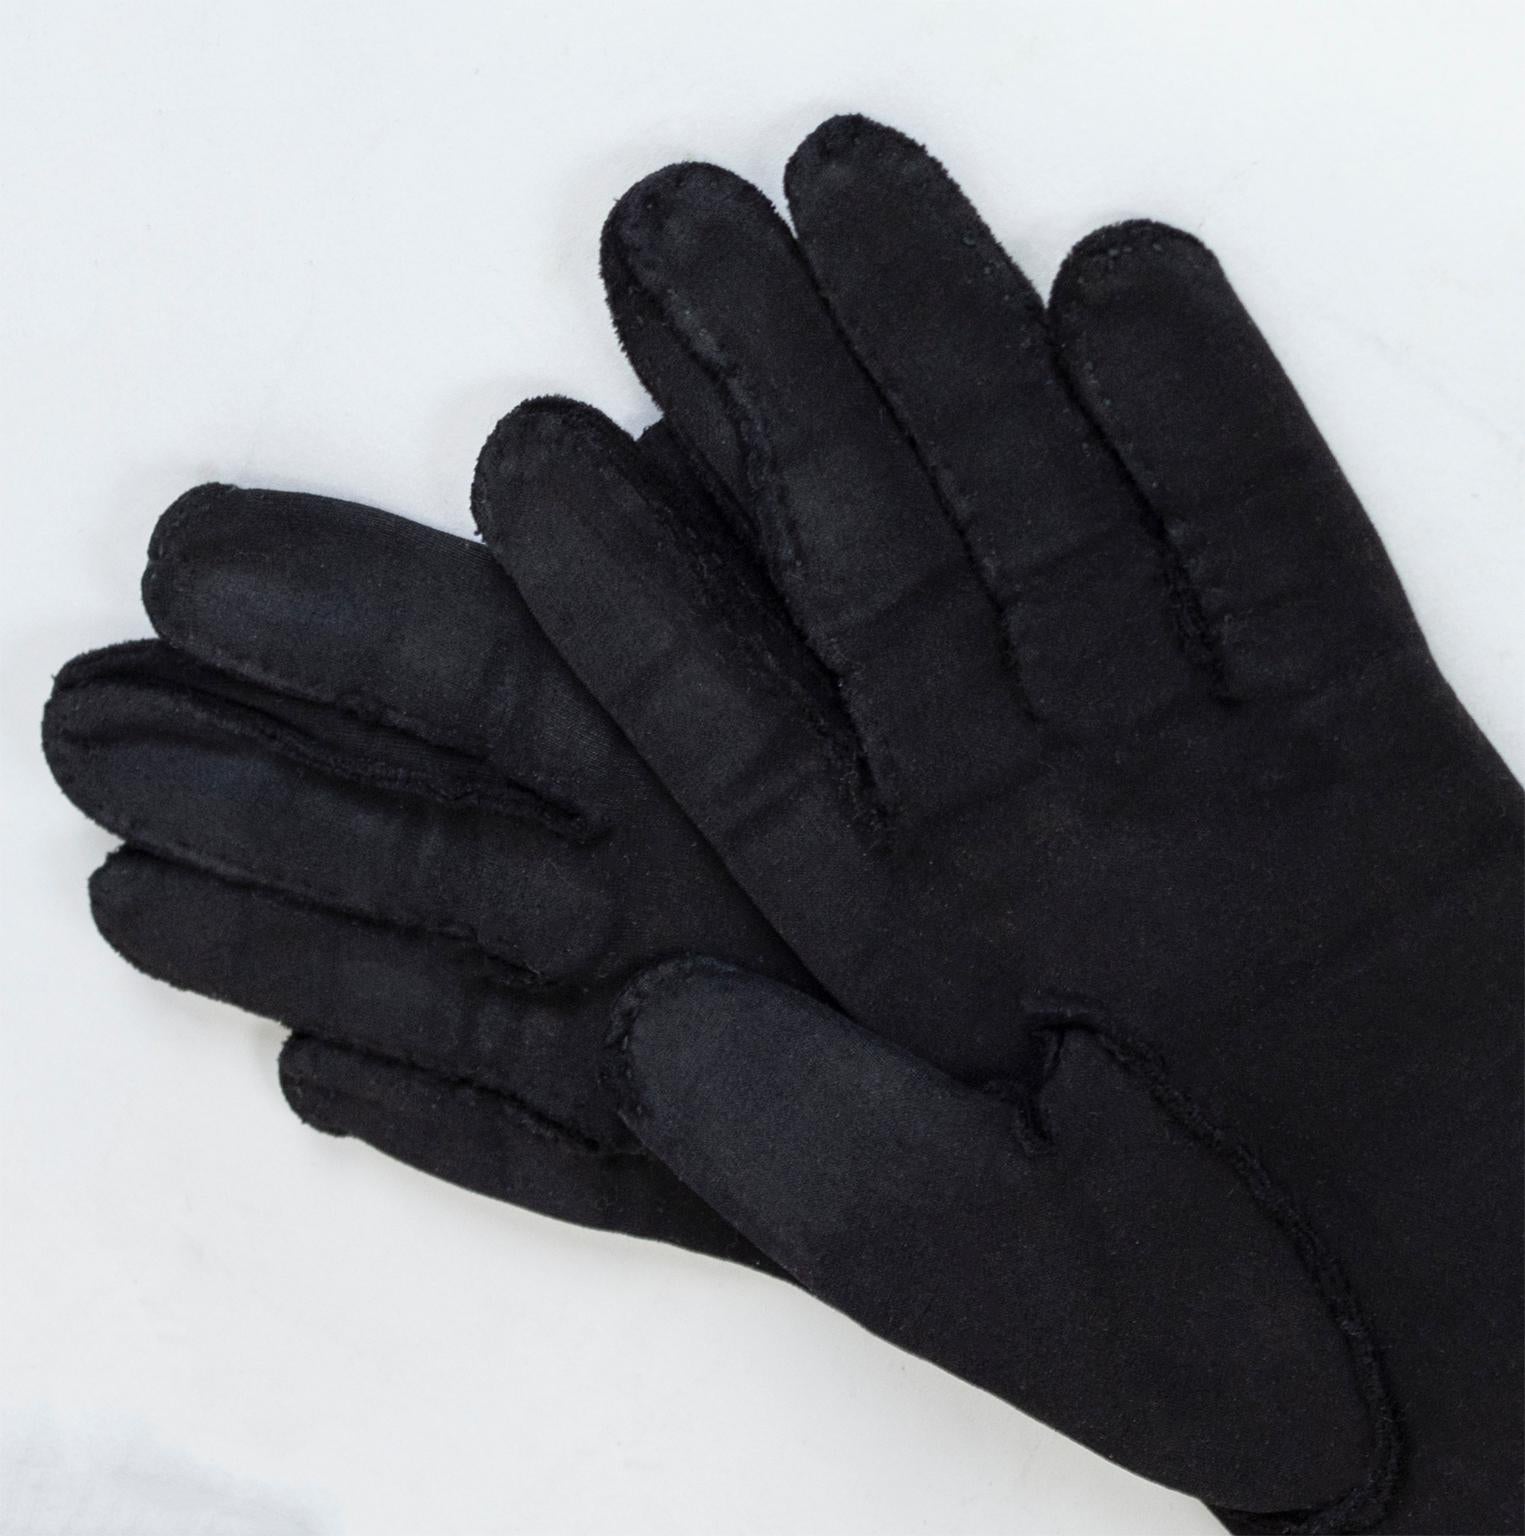 black gauntlet gloves